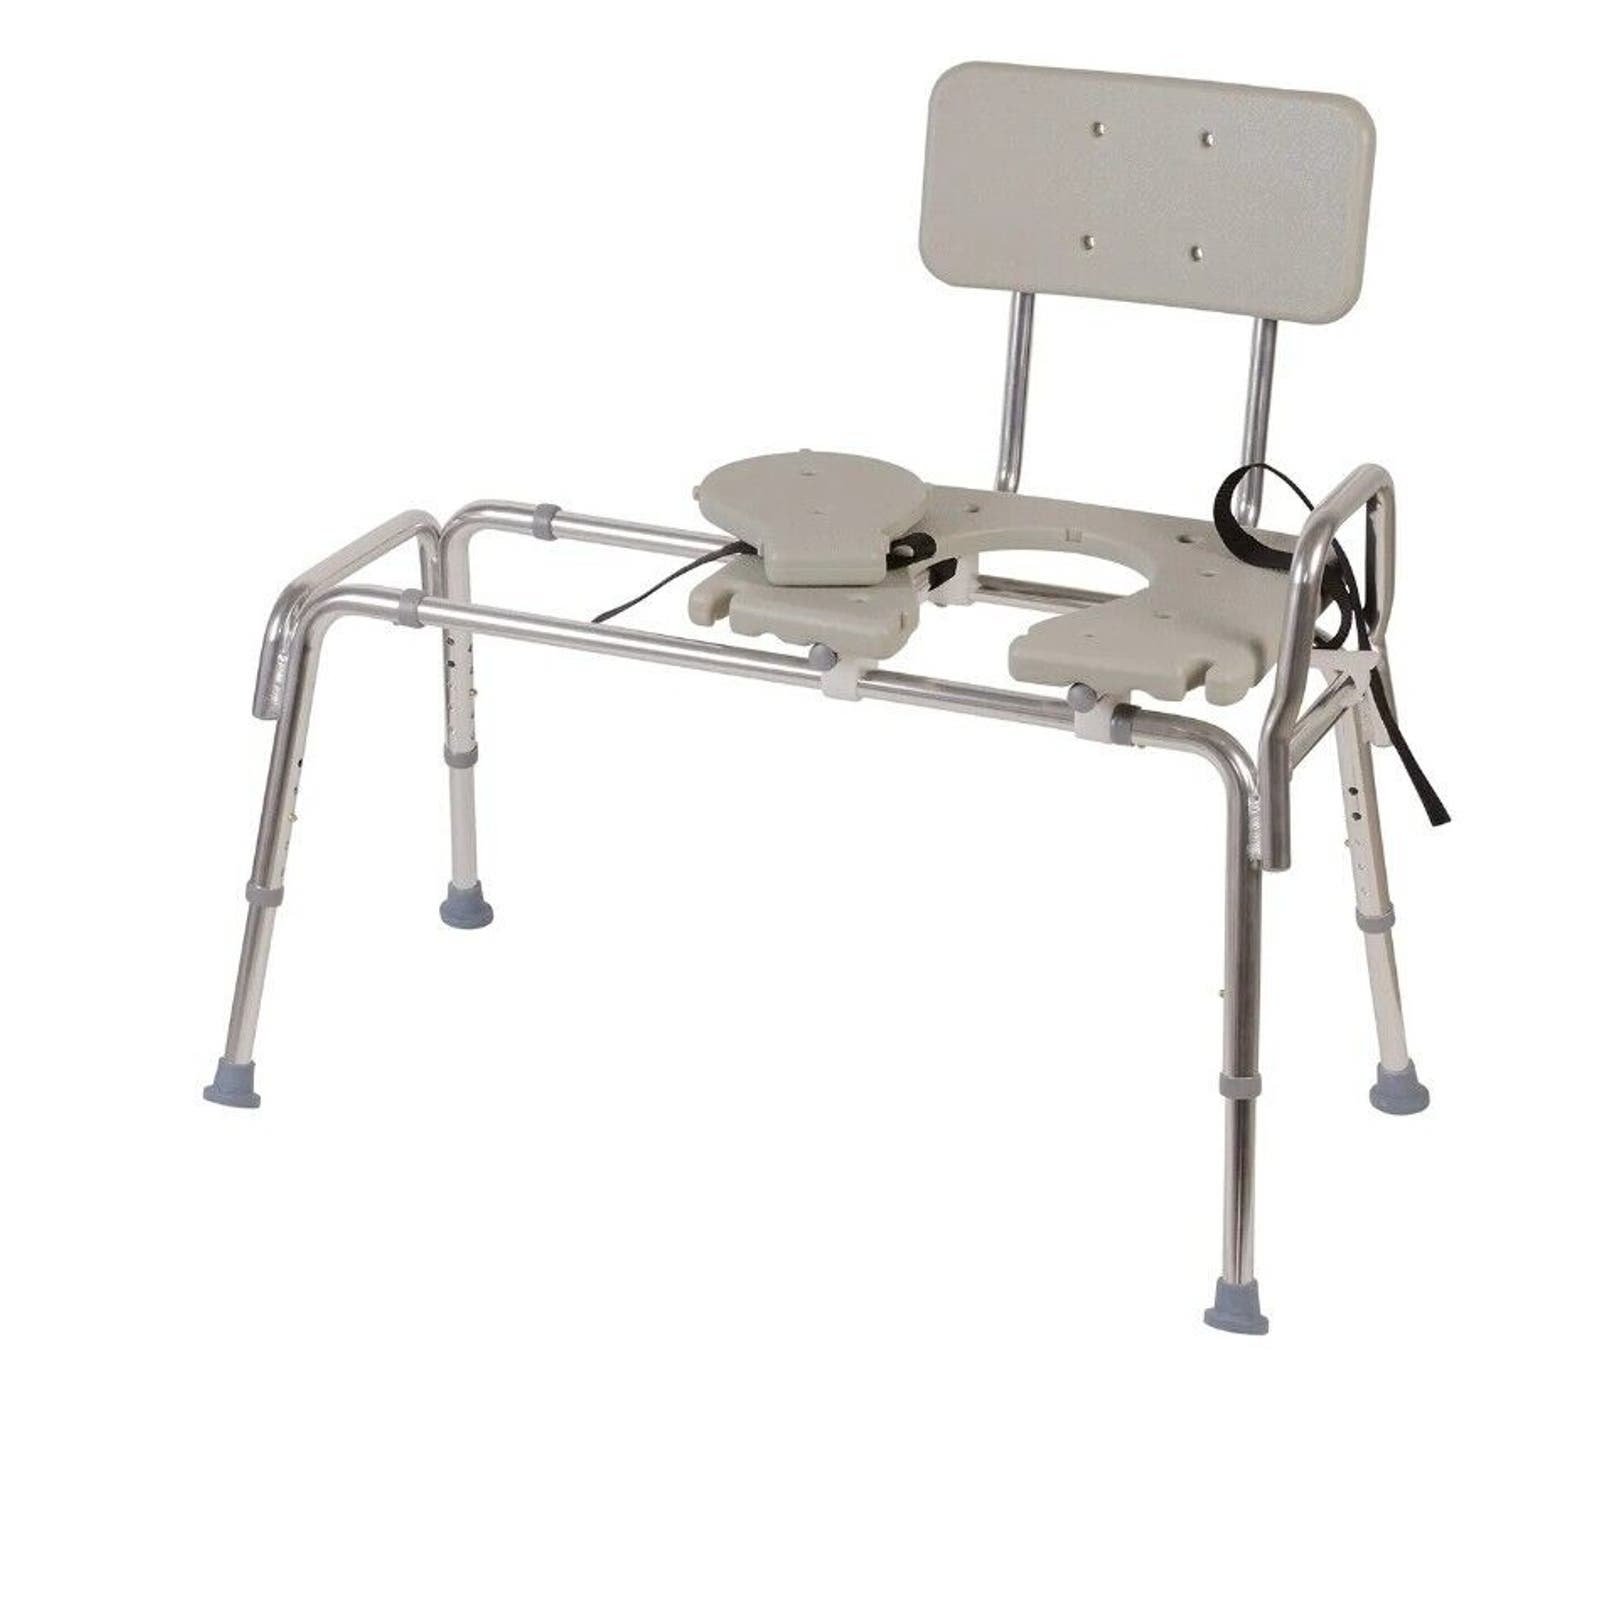 Sliding Shower Chair Transfer Bench - Heavy Duty Sliding Bathtub/Toilet Seat em0xOAFTZ